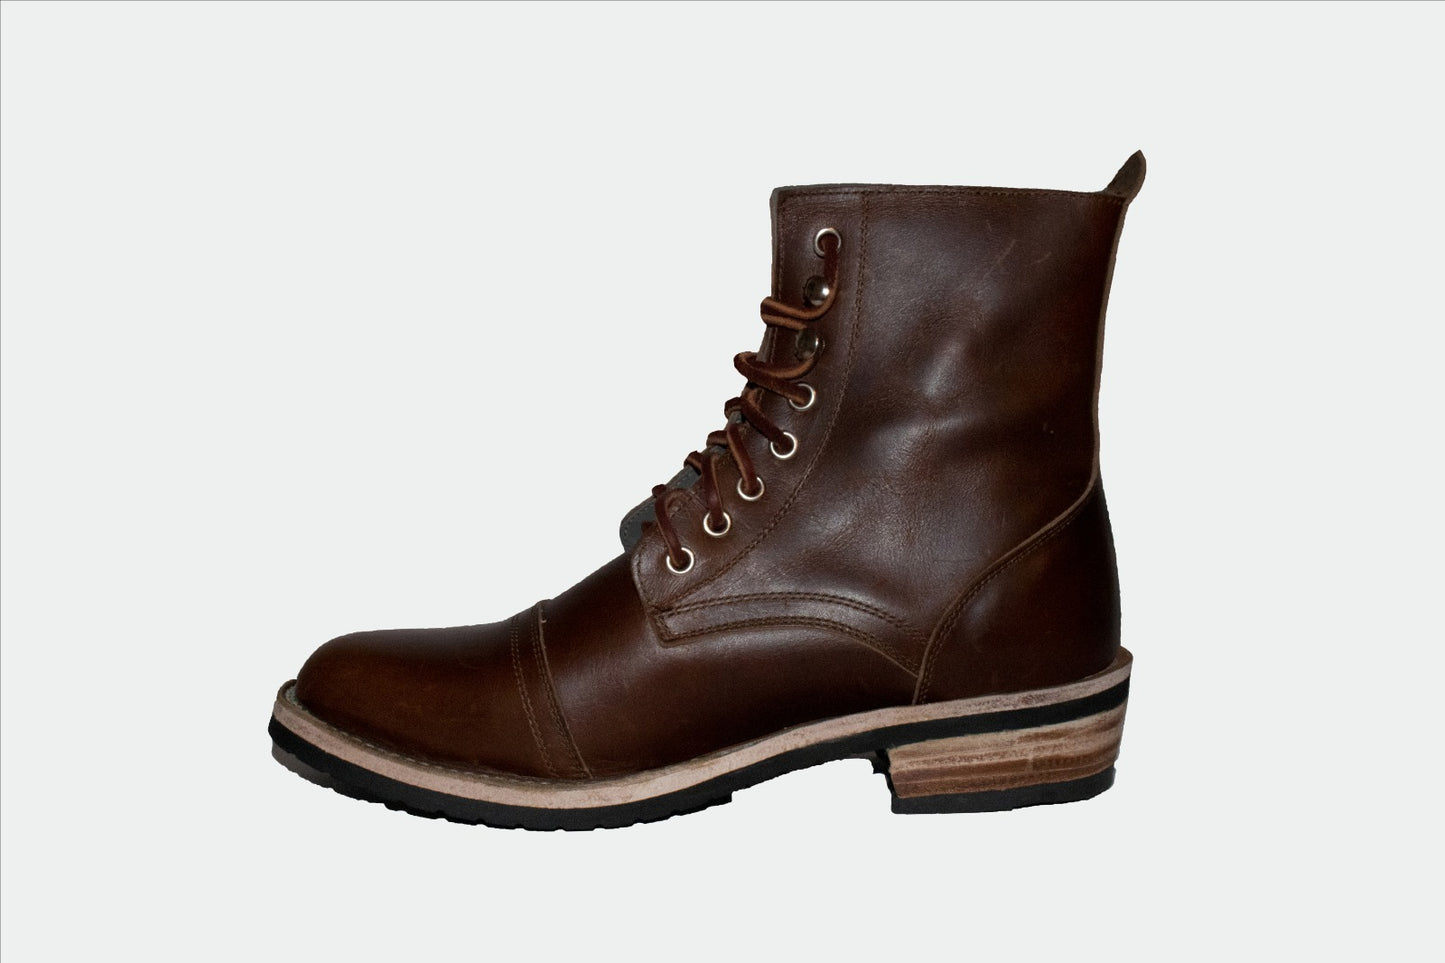 Captoe Boot in Brown